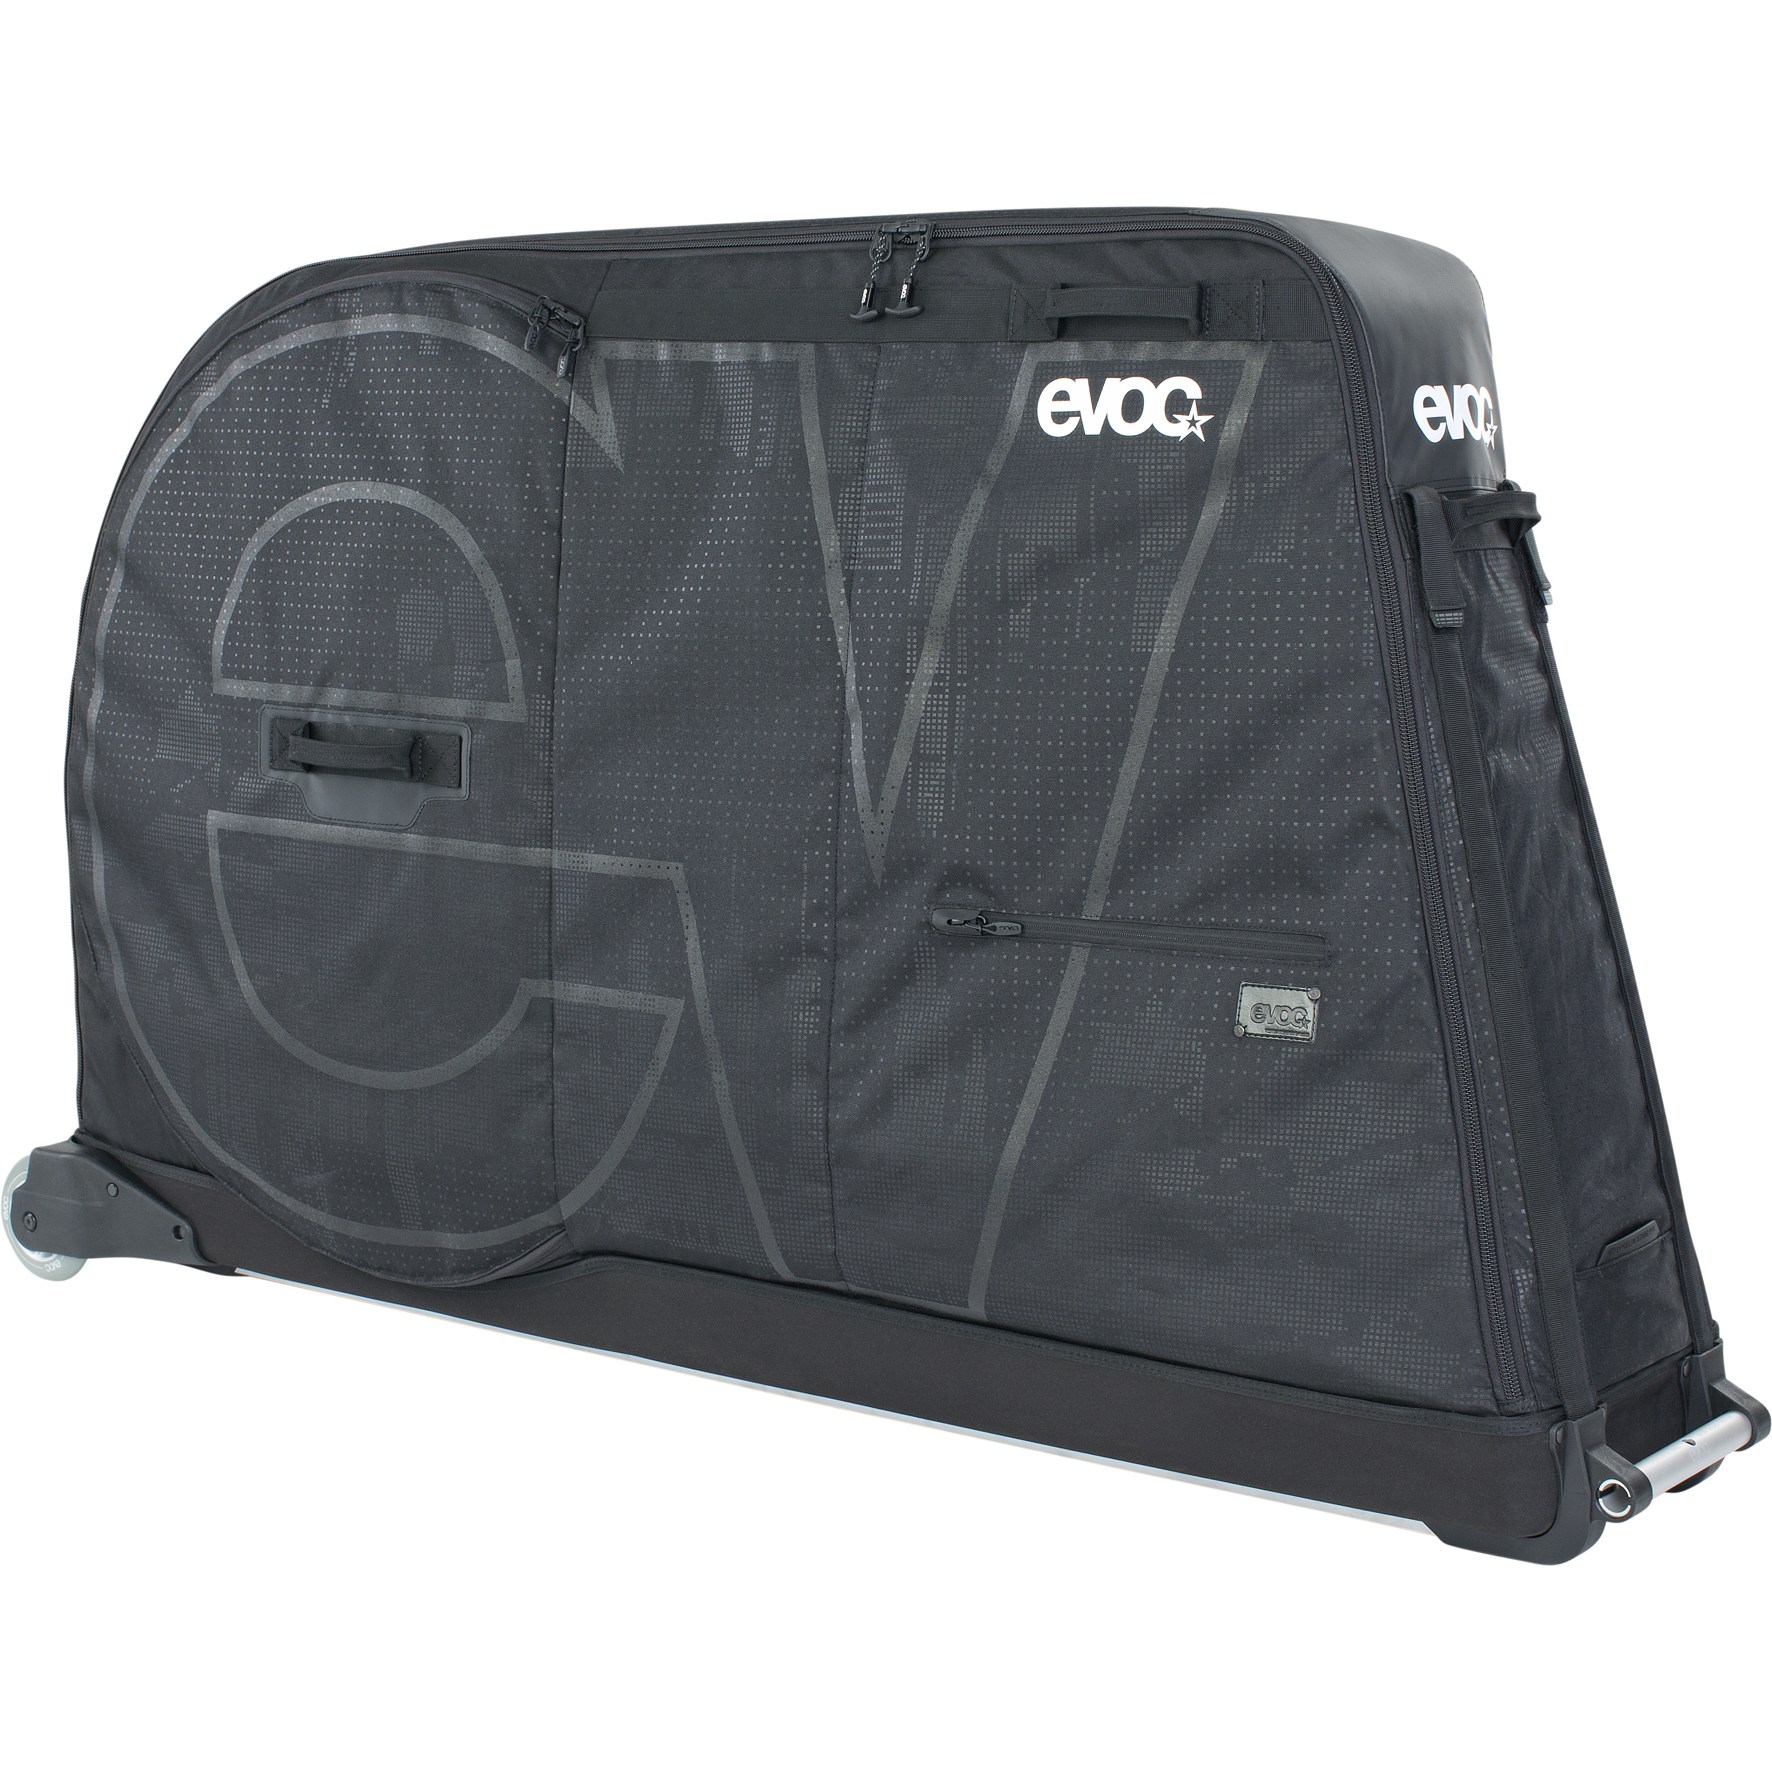 Produktbild von EVOC Bike Bag Pro 305L Fahrradtransporttasche - Schwarz